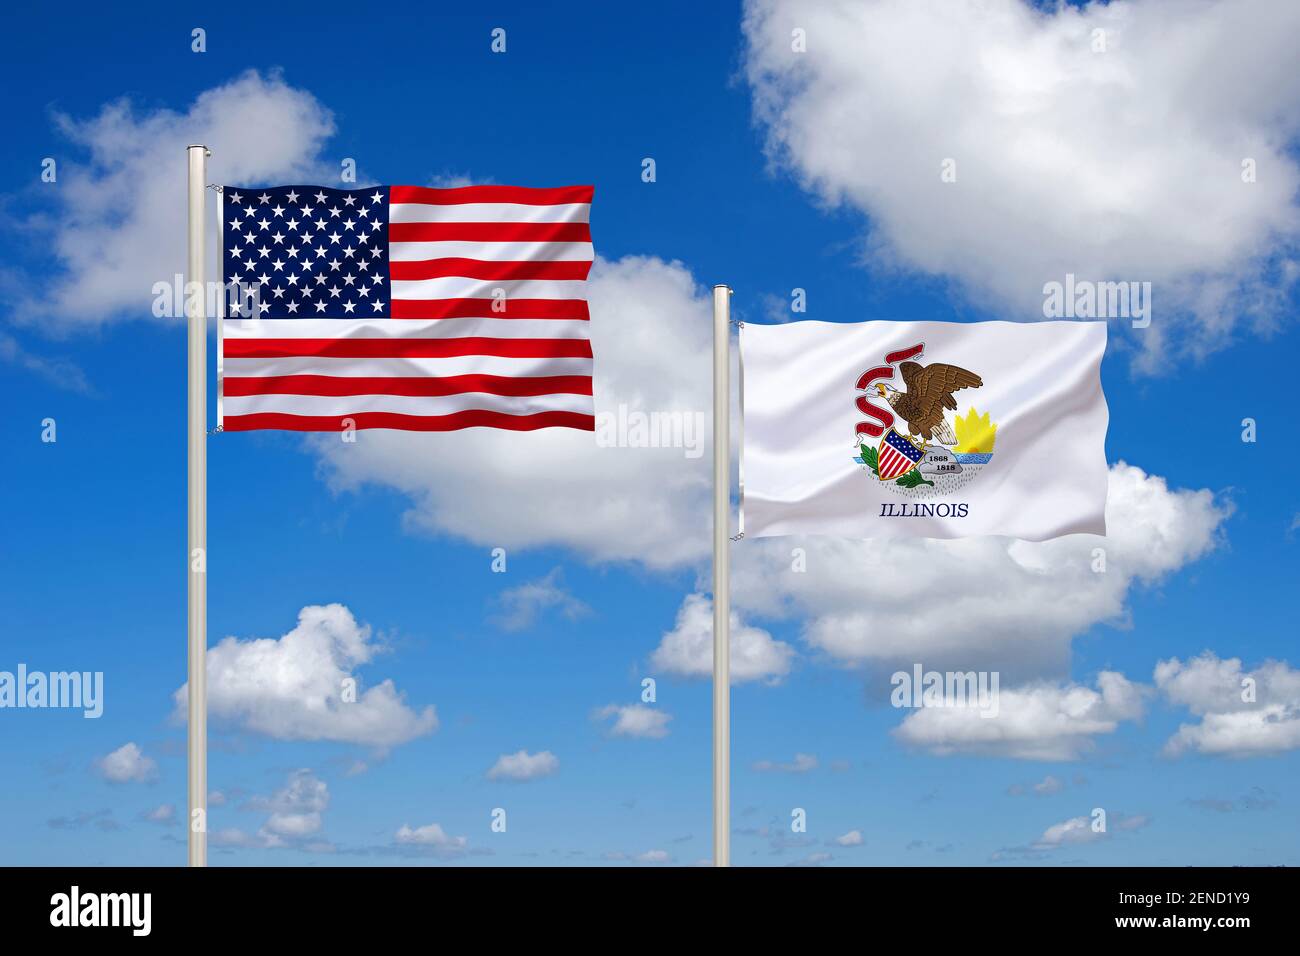 Die Flagge von den USA und Illinois, Bundesstaat im Mittleren Westen der USA,  Hauptstadt ist Chicago Stockfotografie - Alamy